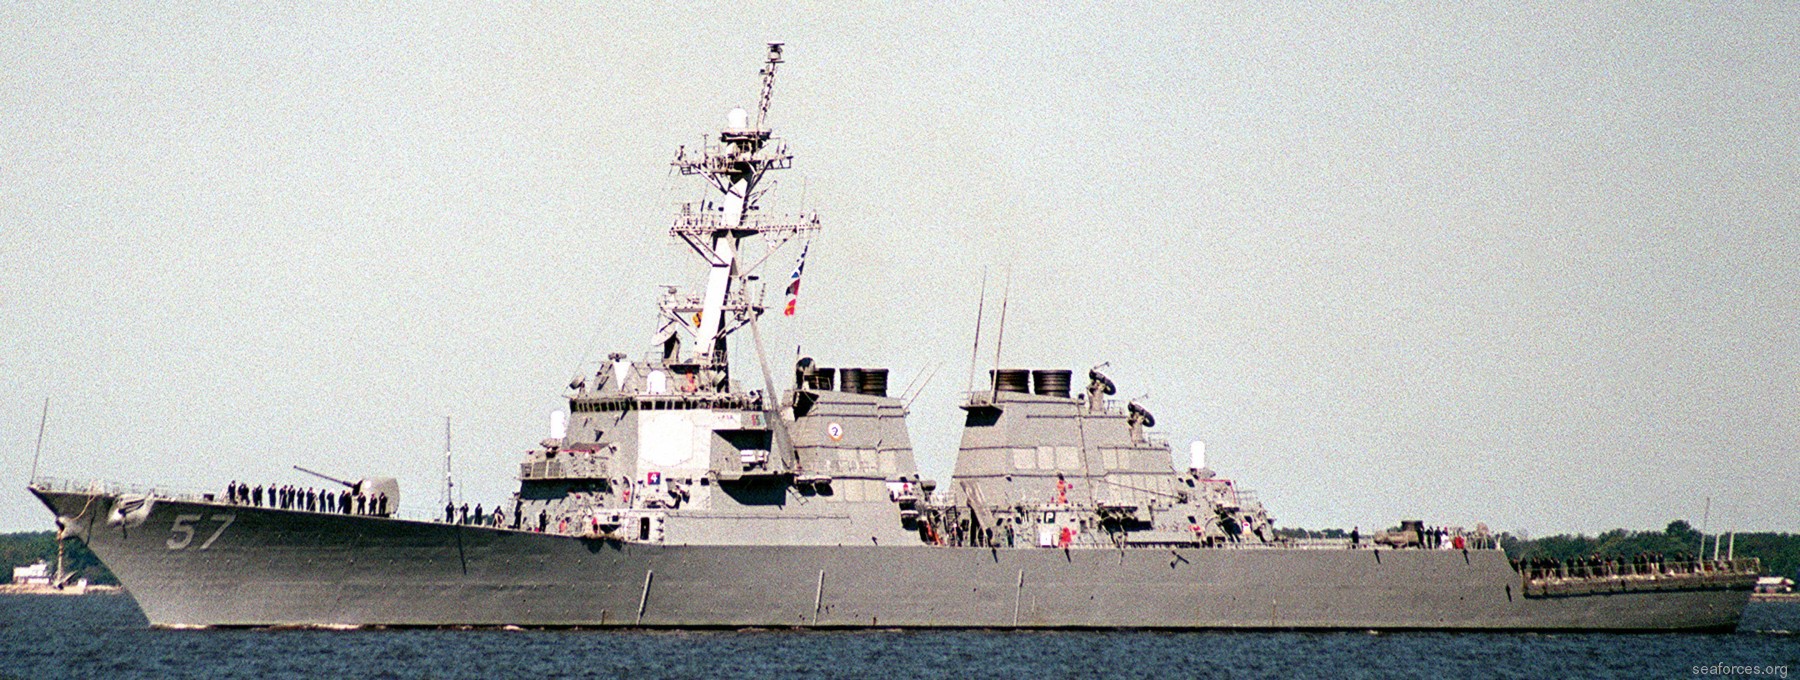 ddg-57 uss mitscher guided missile destroyer us navy 90